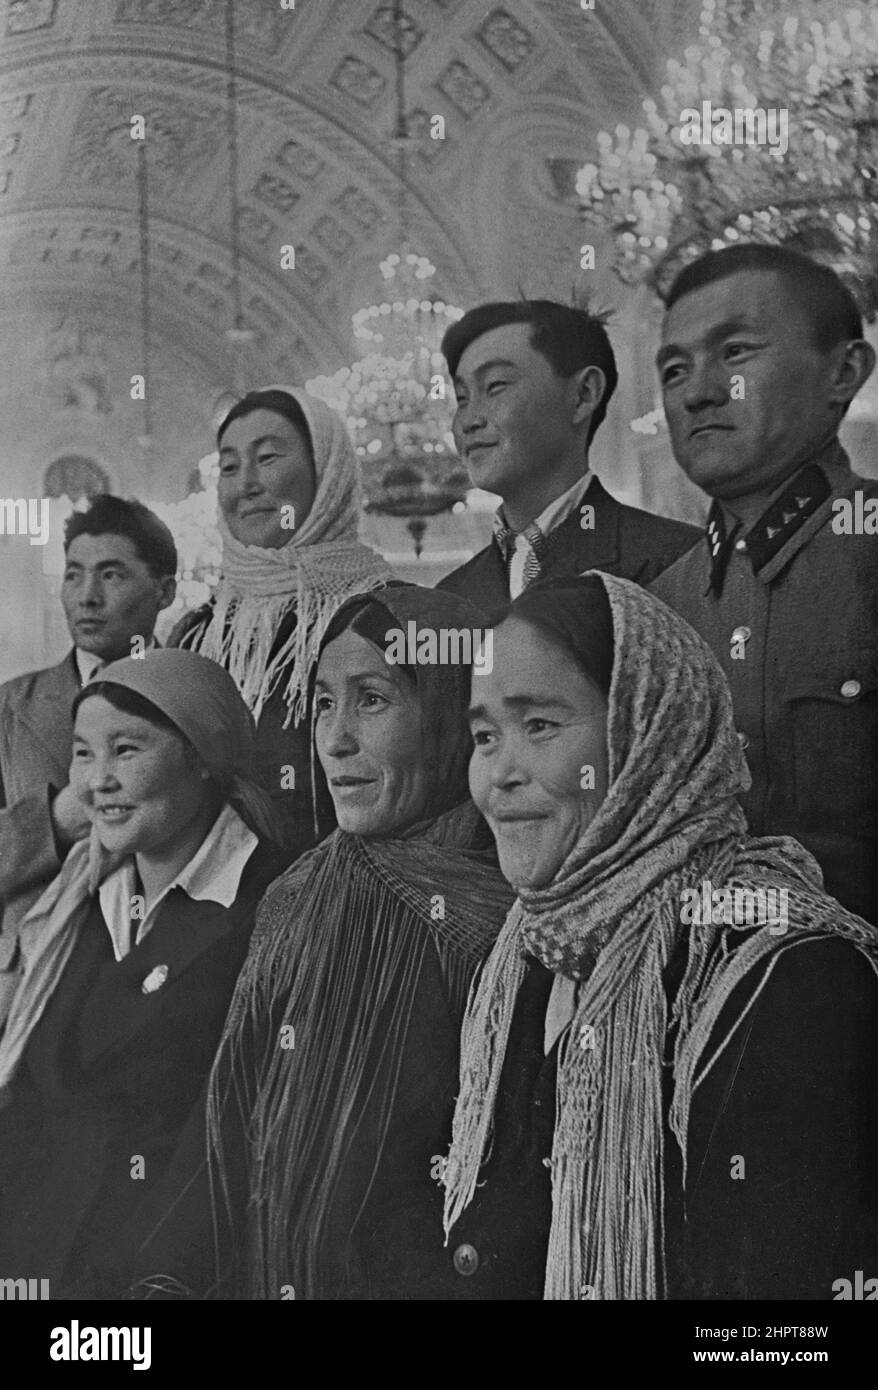 Photo d'époque des députés au Soviet suprême du Kremlin. Moscou. URSS (Union des Républiques socialistes soviétiques). 1930-1940 Banque D'Images